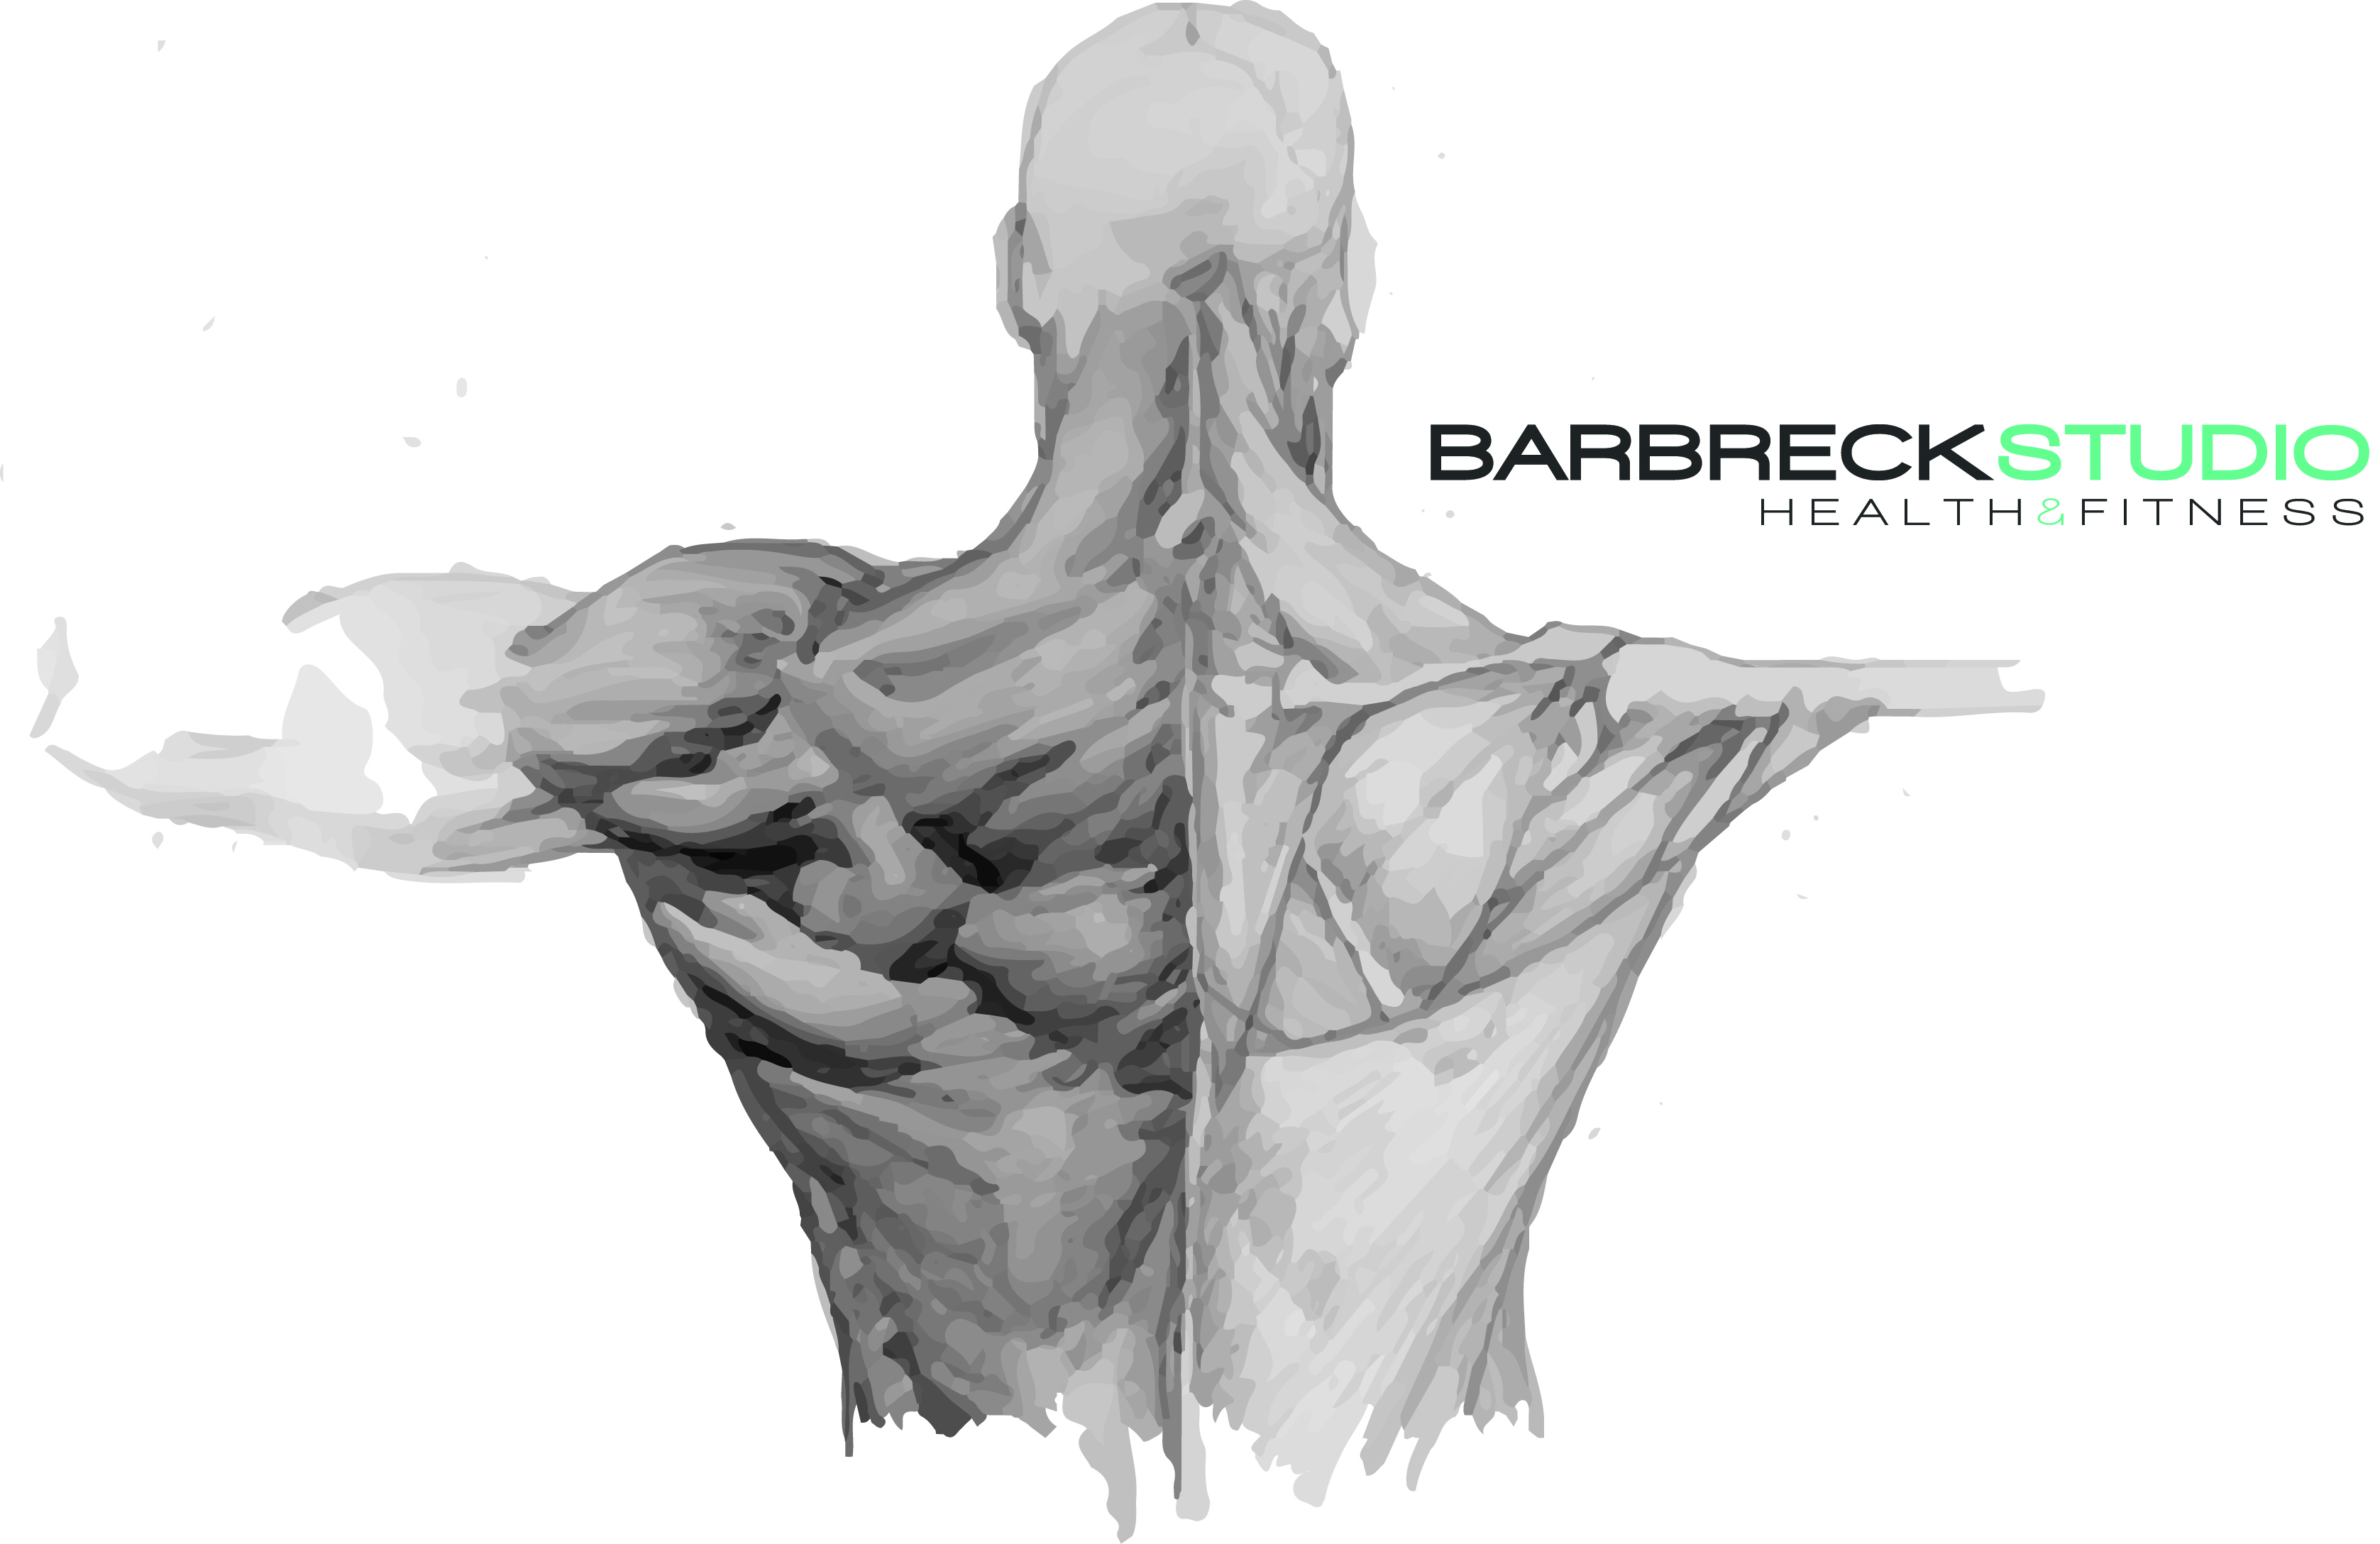 Barbreck Studio